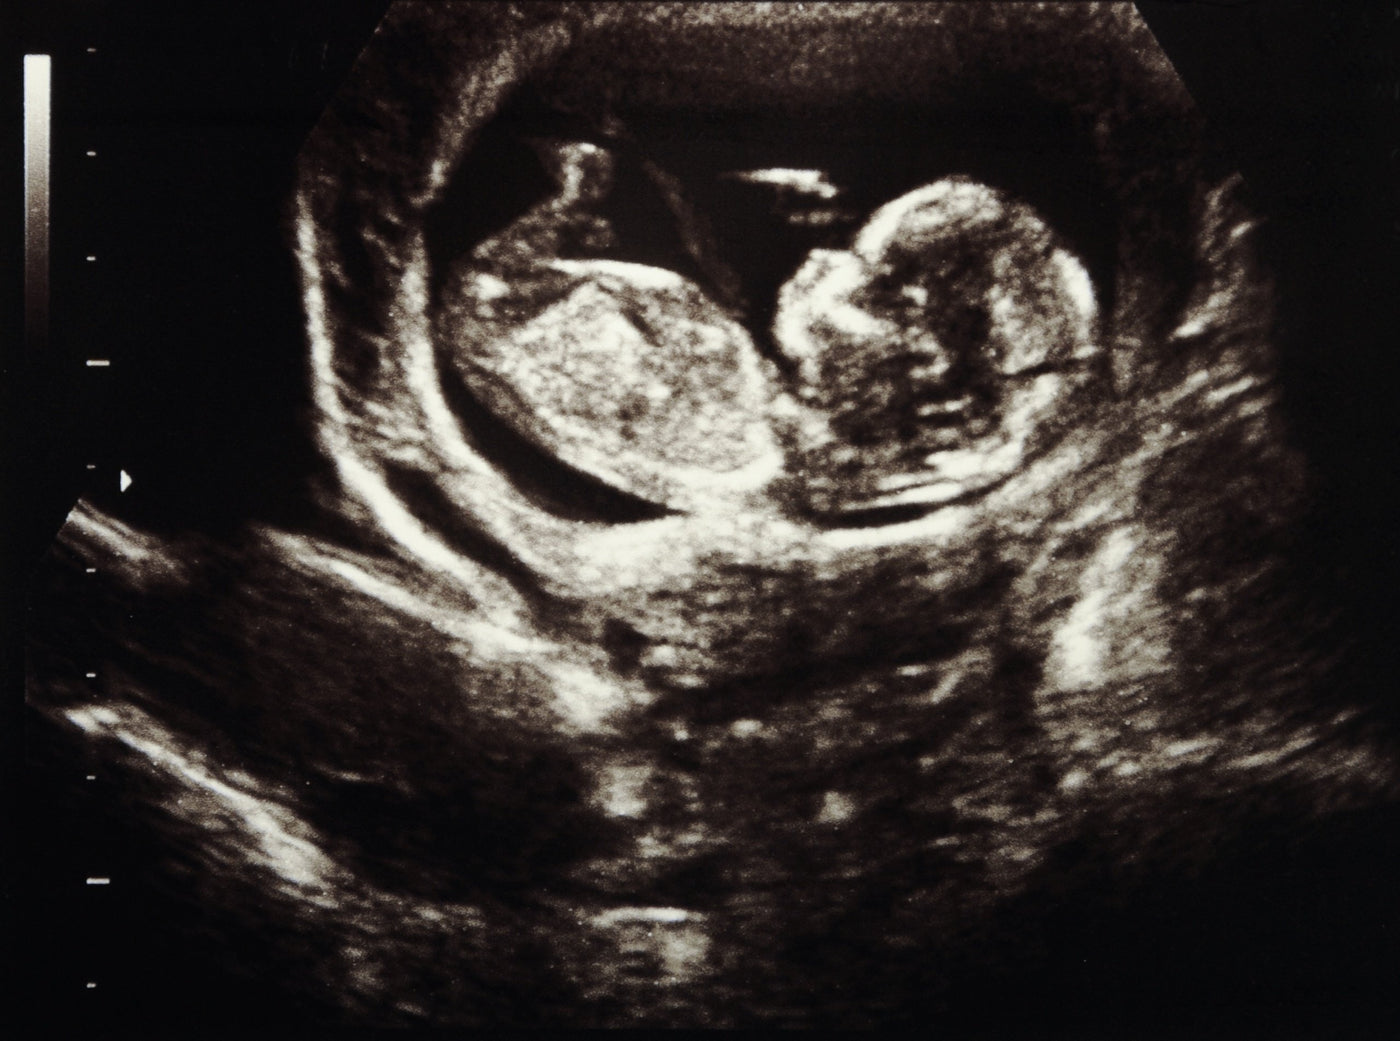 Dank Ultraschall ist es möglich zu sehen, wie Ihr Baby während der Schwangerschaft wächst. Ist es schädlich?